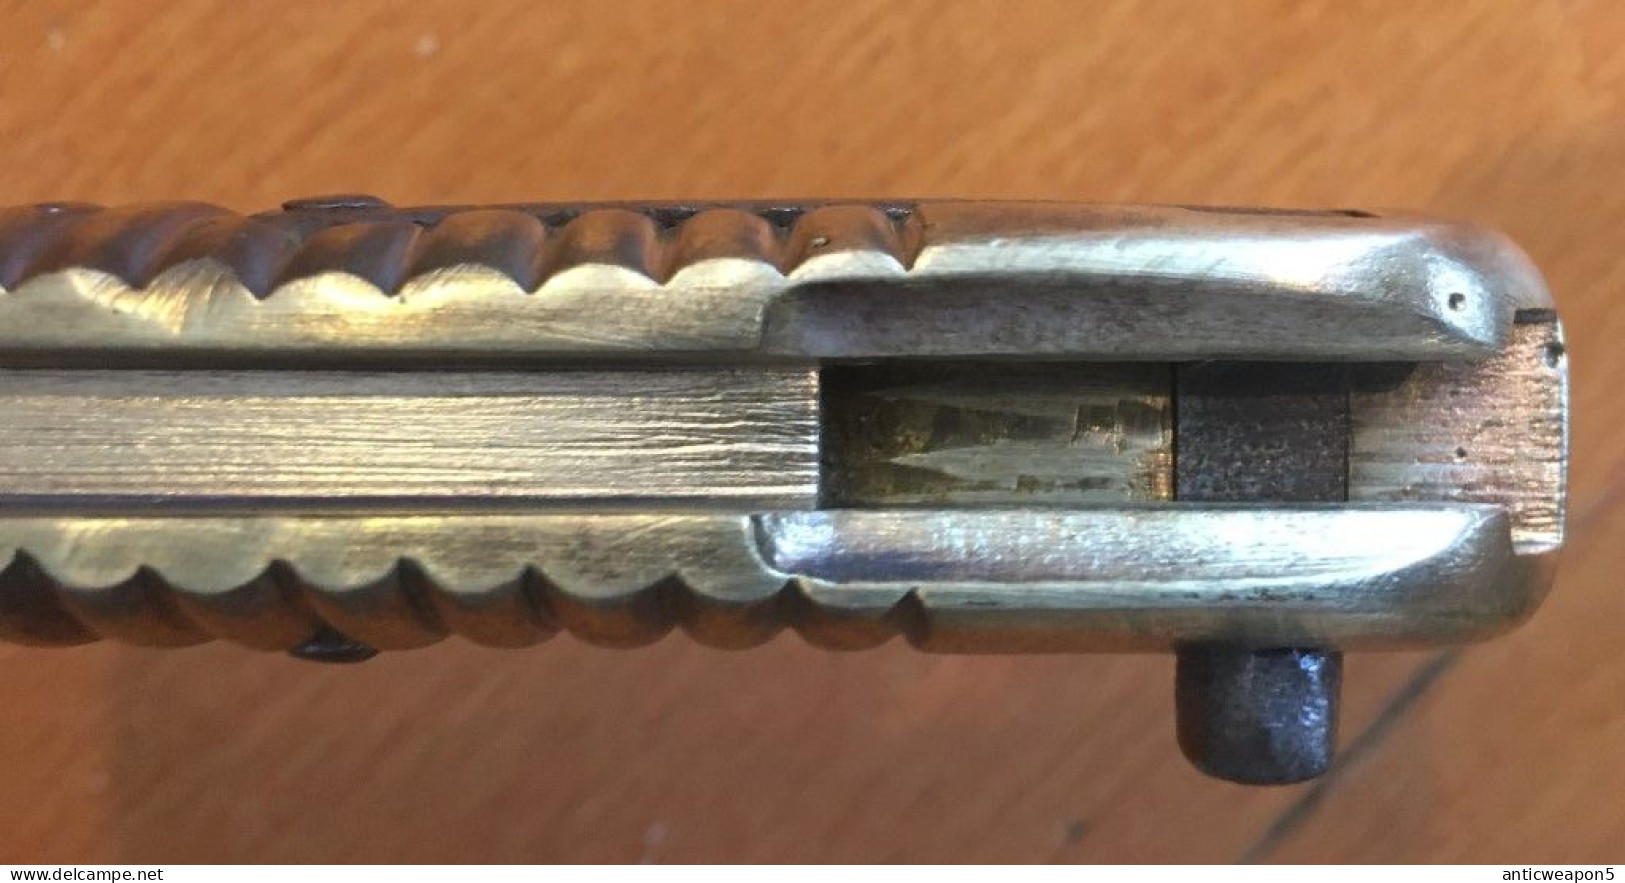 Baïonnette de fusil Chasspot. France. M1866 (724) Du fabricant seulement P en cercle. Croix Z 12654